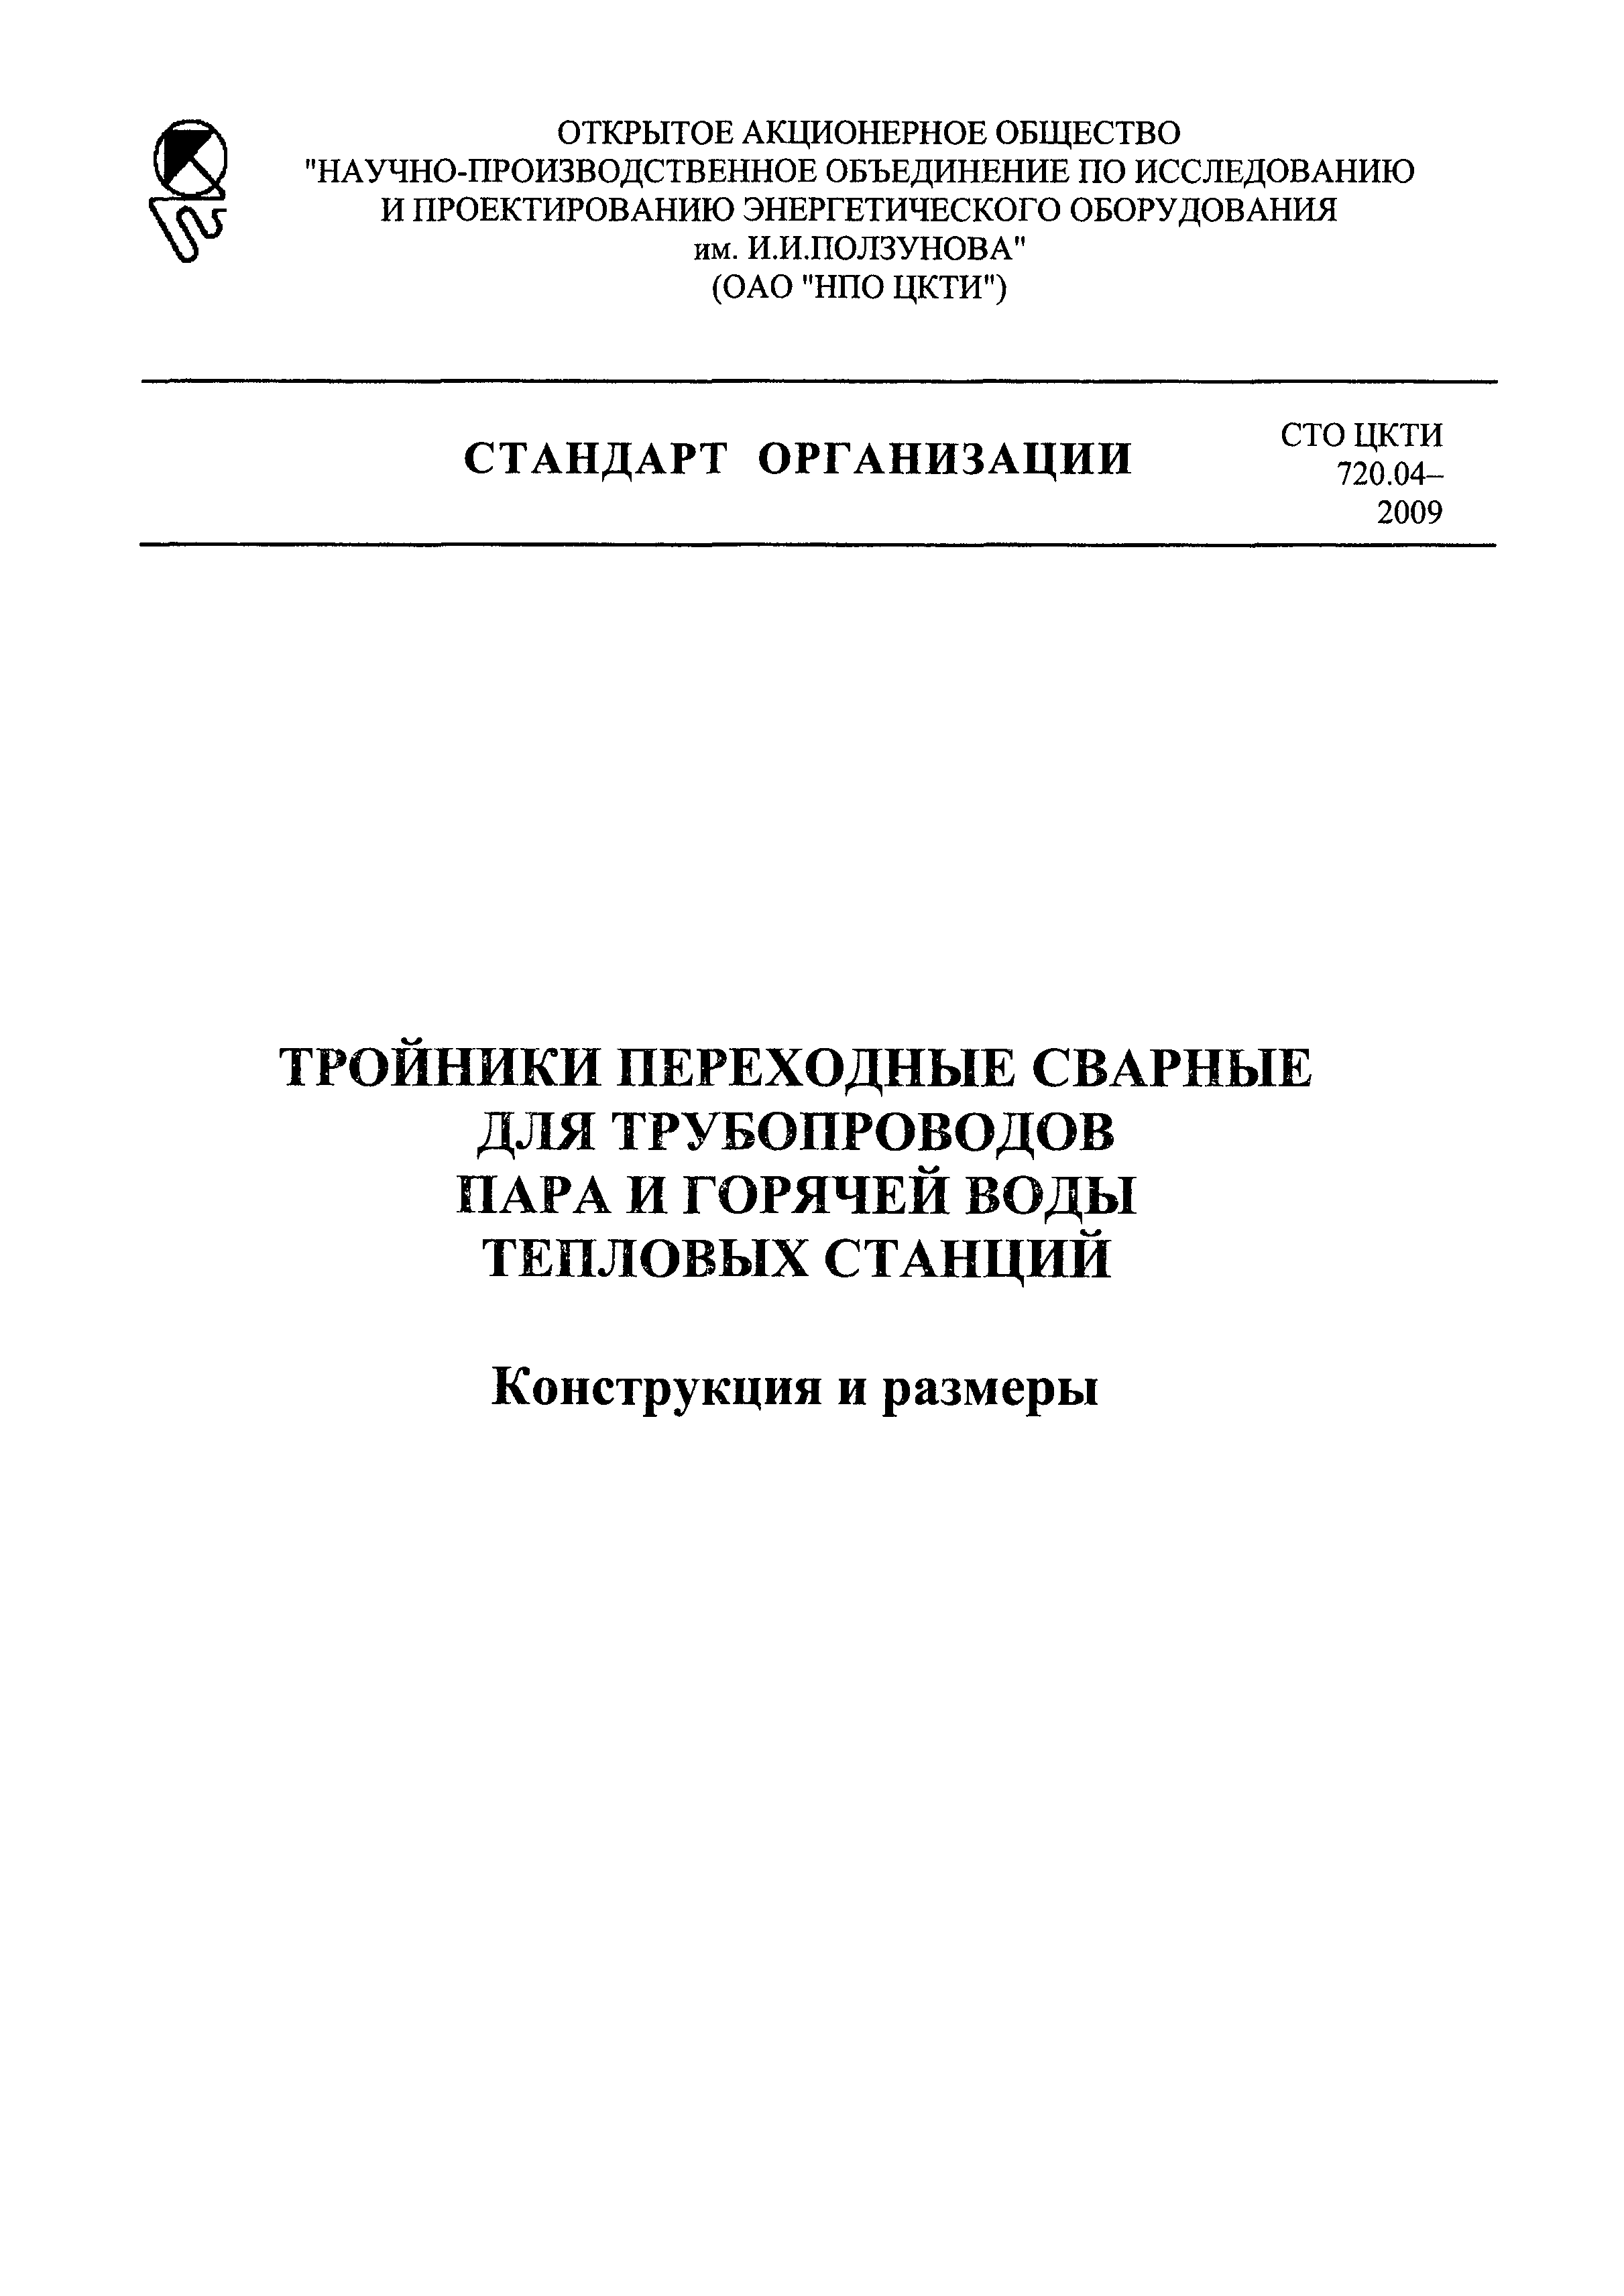 СТО ЦКТИ 720.04-2009